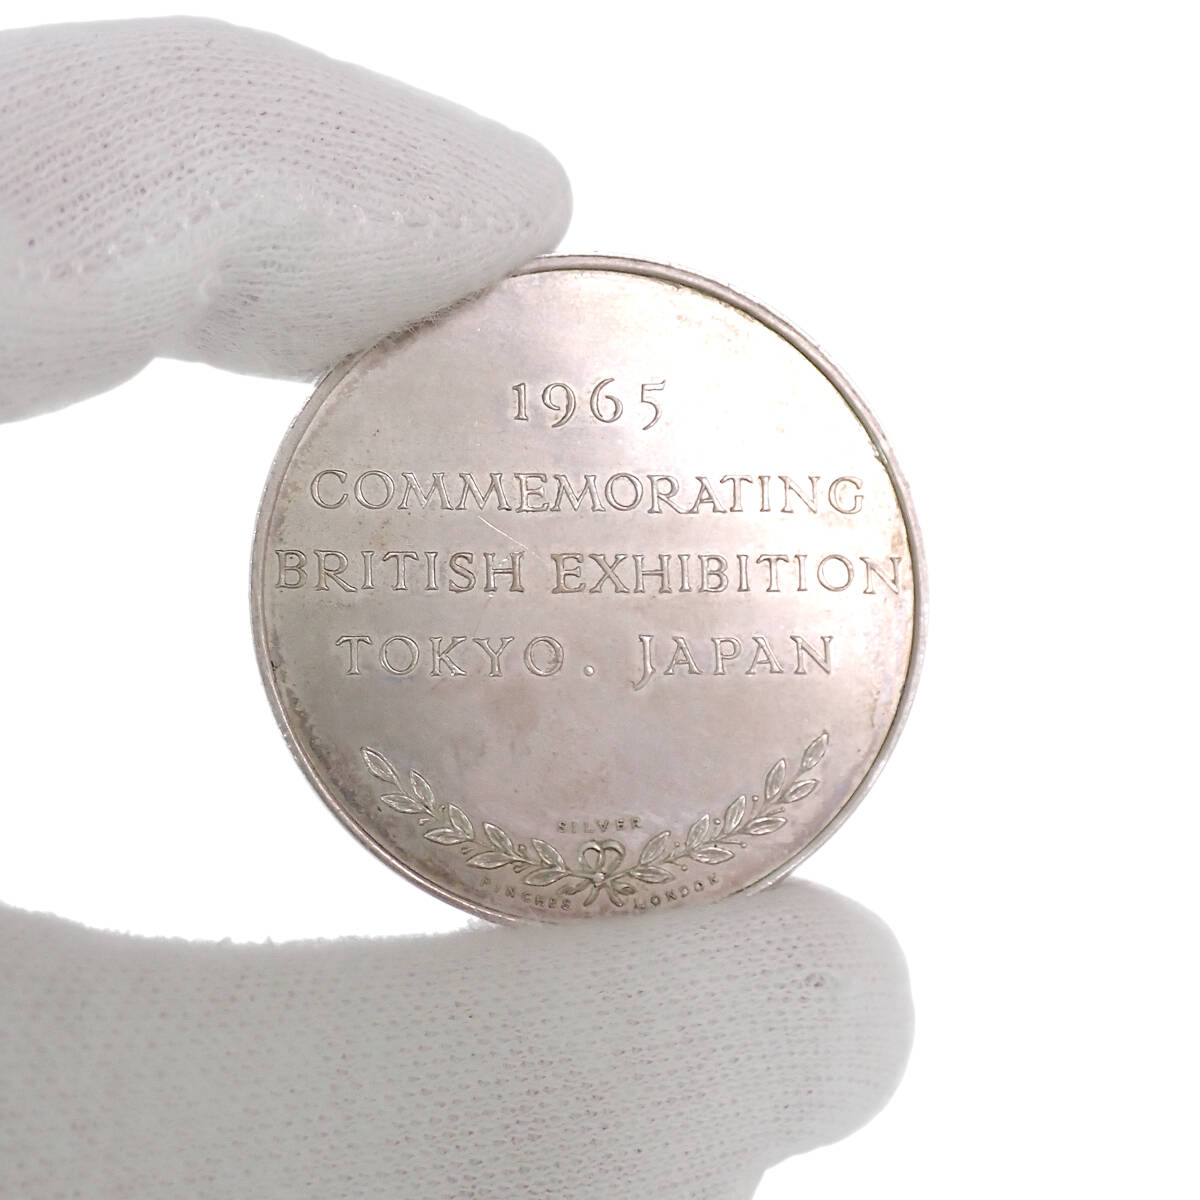 1965年 東京・英国博覧会記念 ブリタニア座像 銀メダル COMMEMORATING BRITISH EXHIBITION 1965 TOKYO JAPAN 当時物_画像7